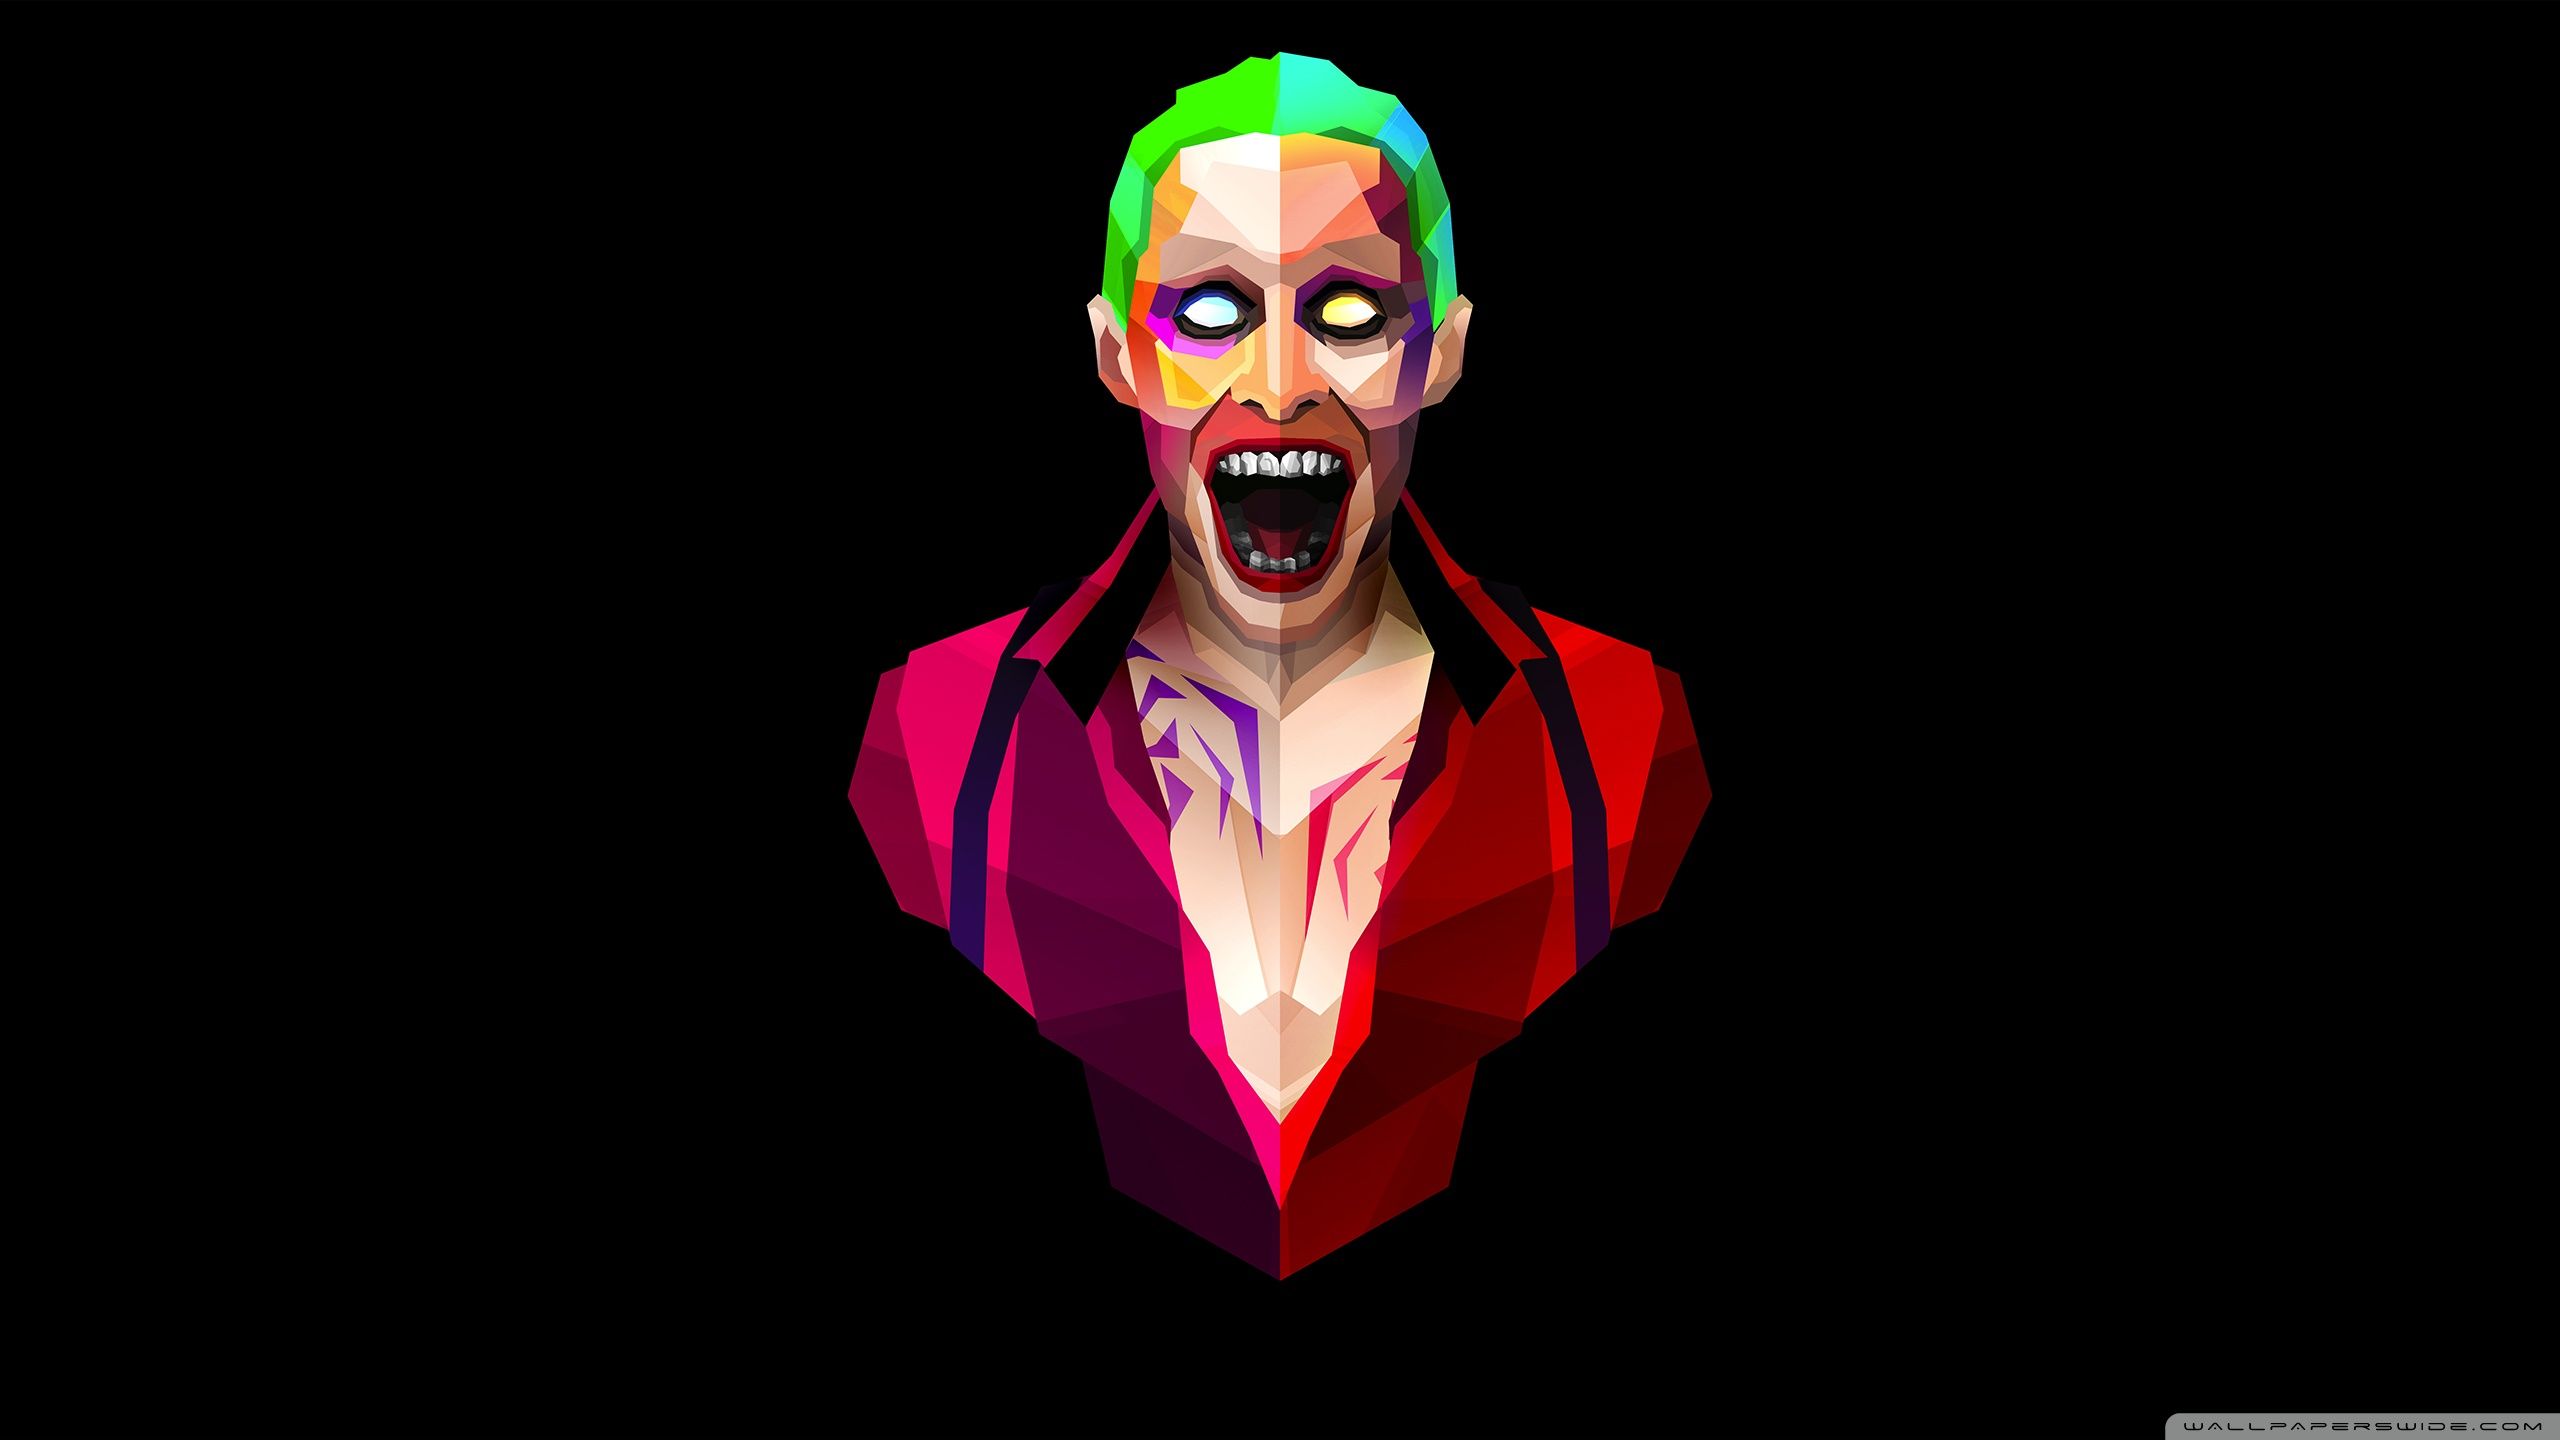 Joker free downloads